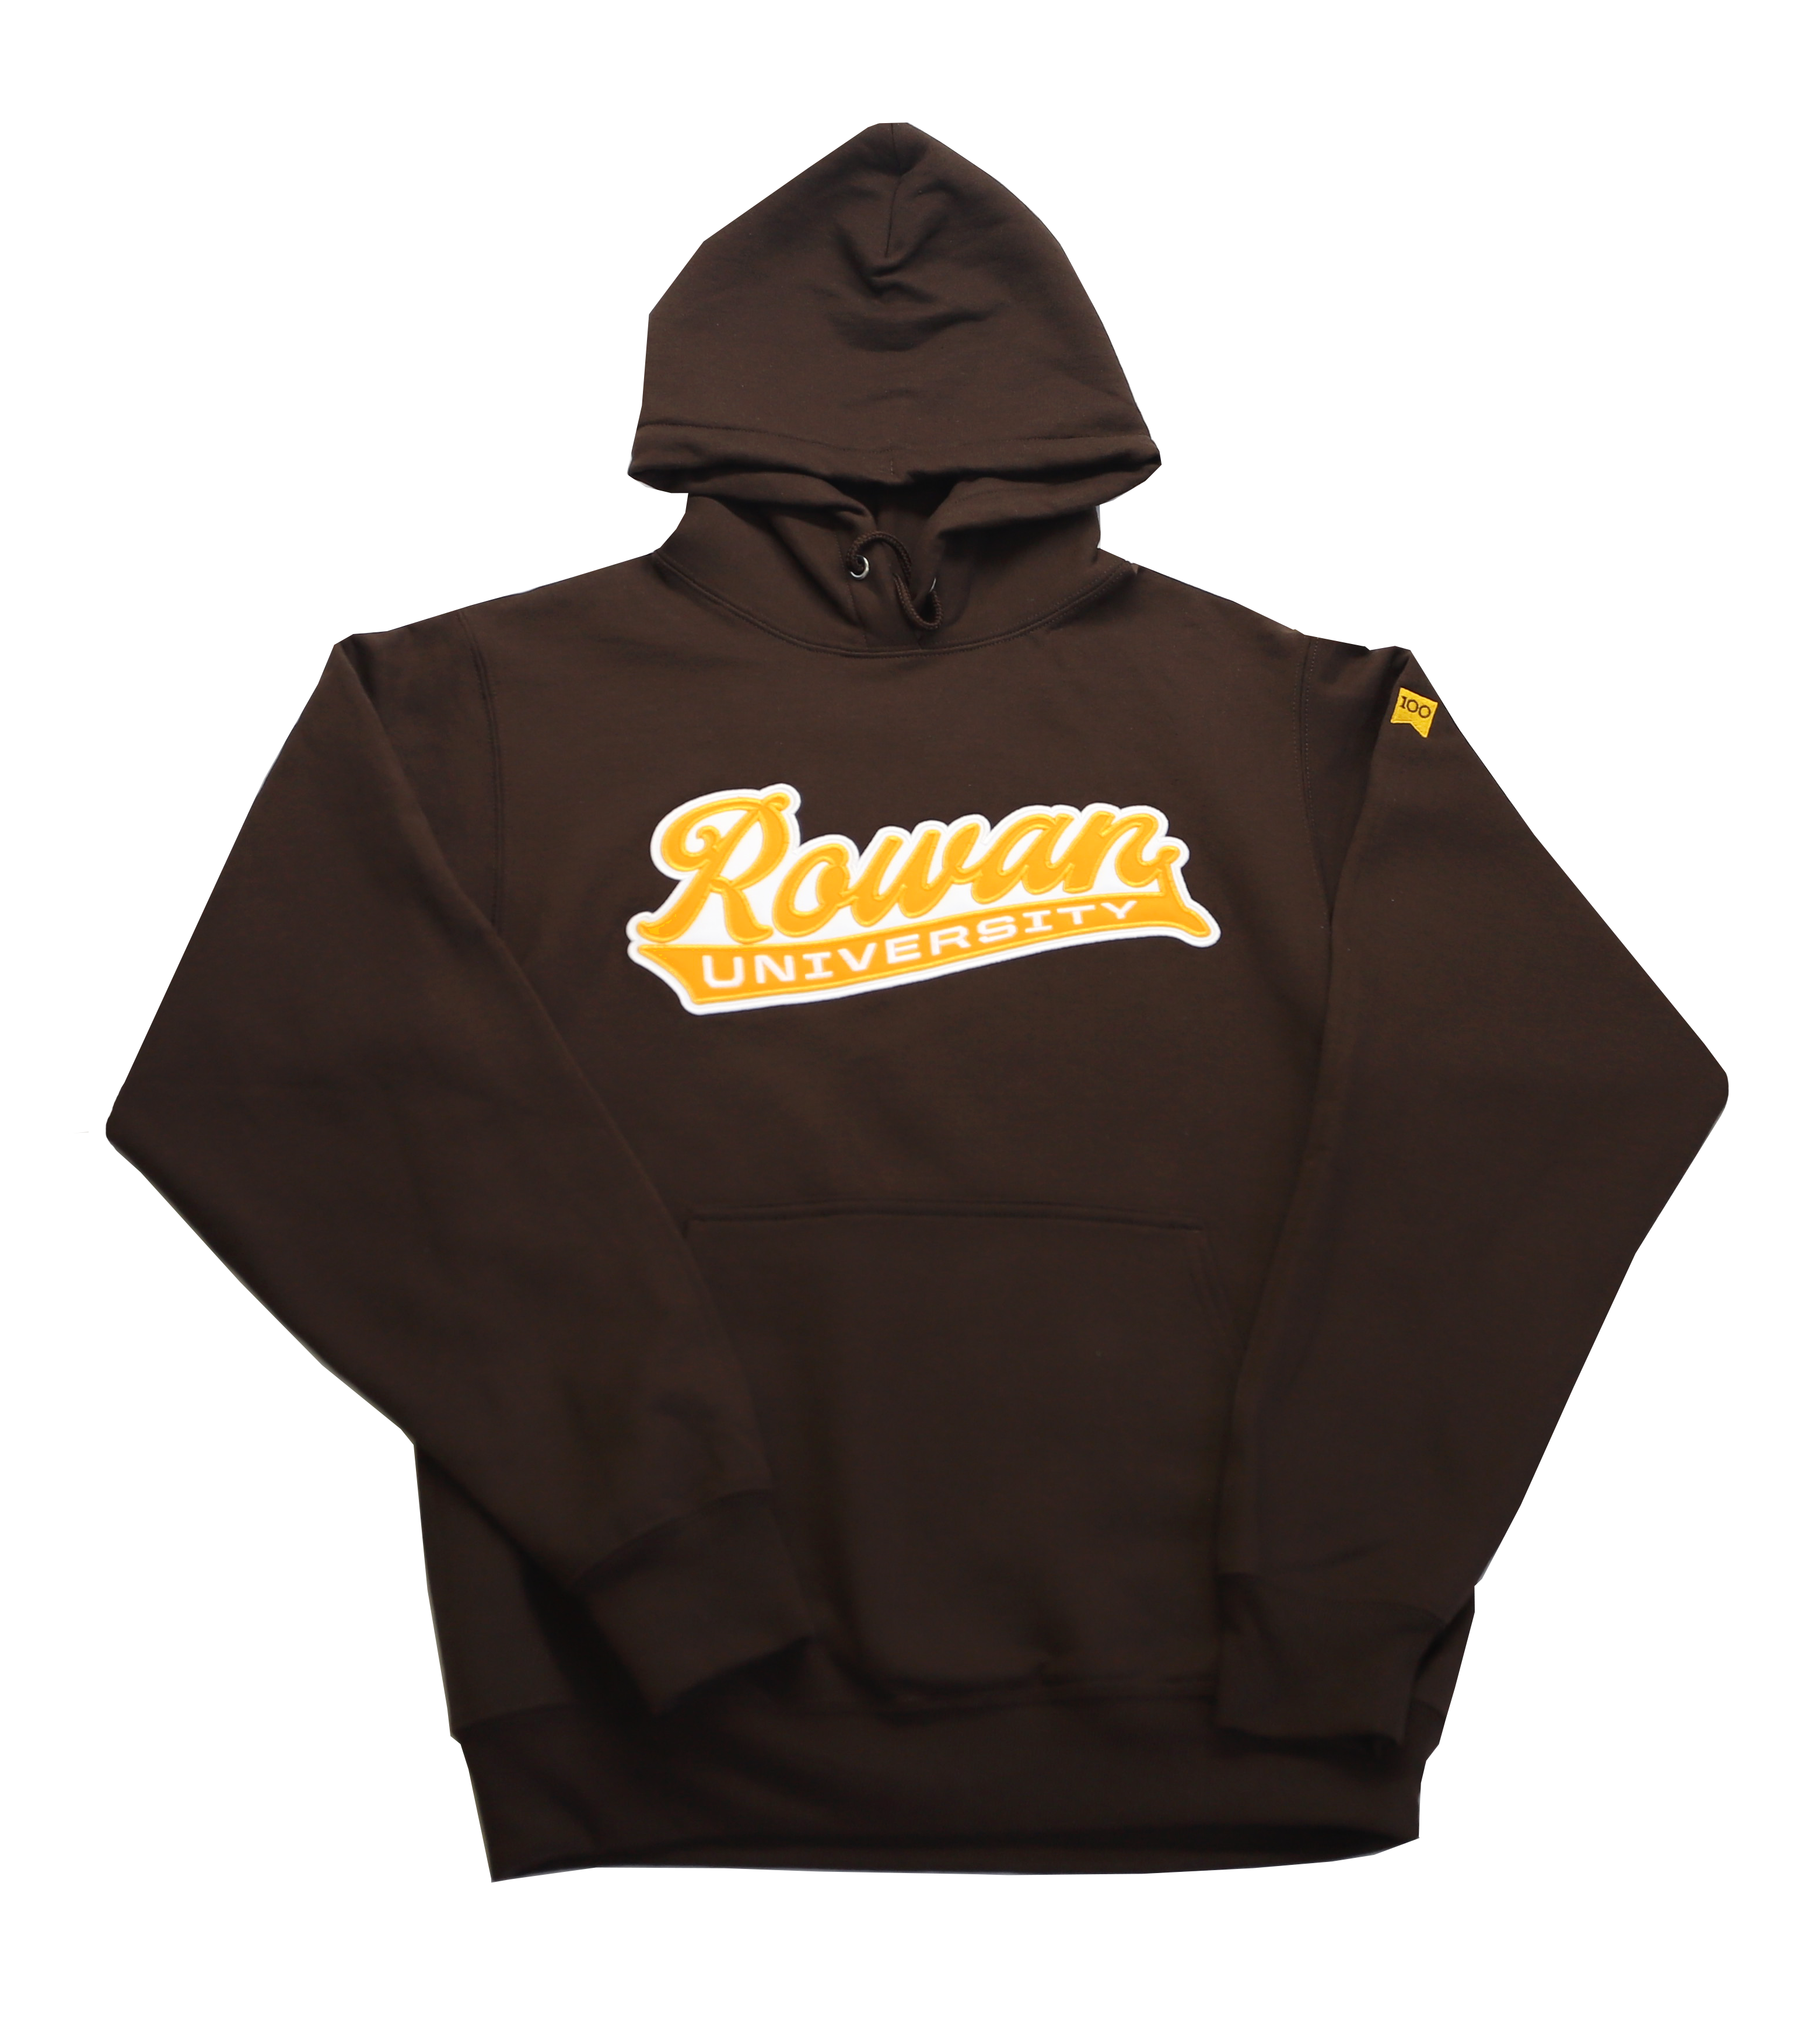 Rowan University brown hoodie